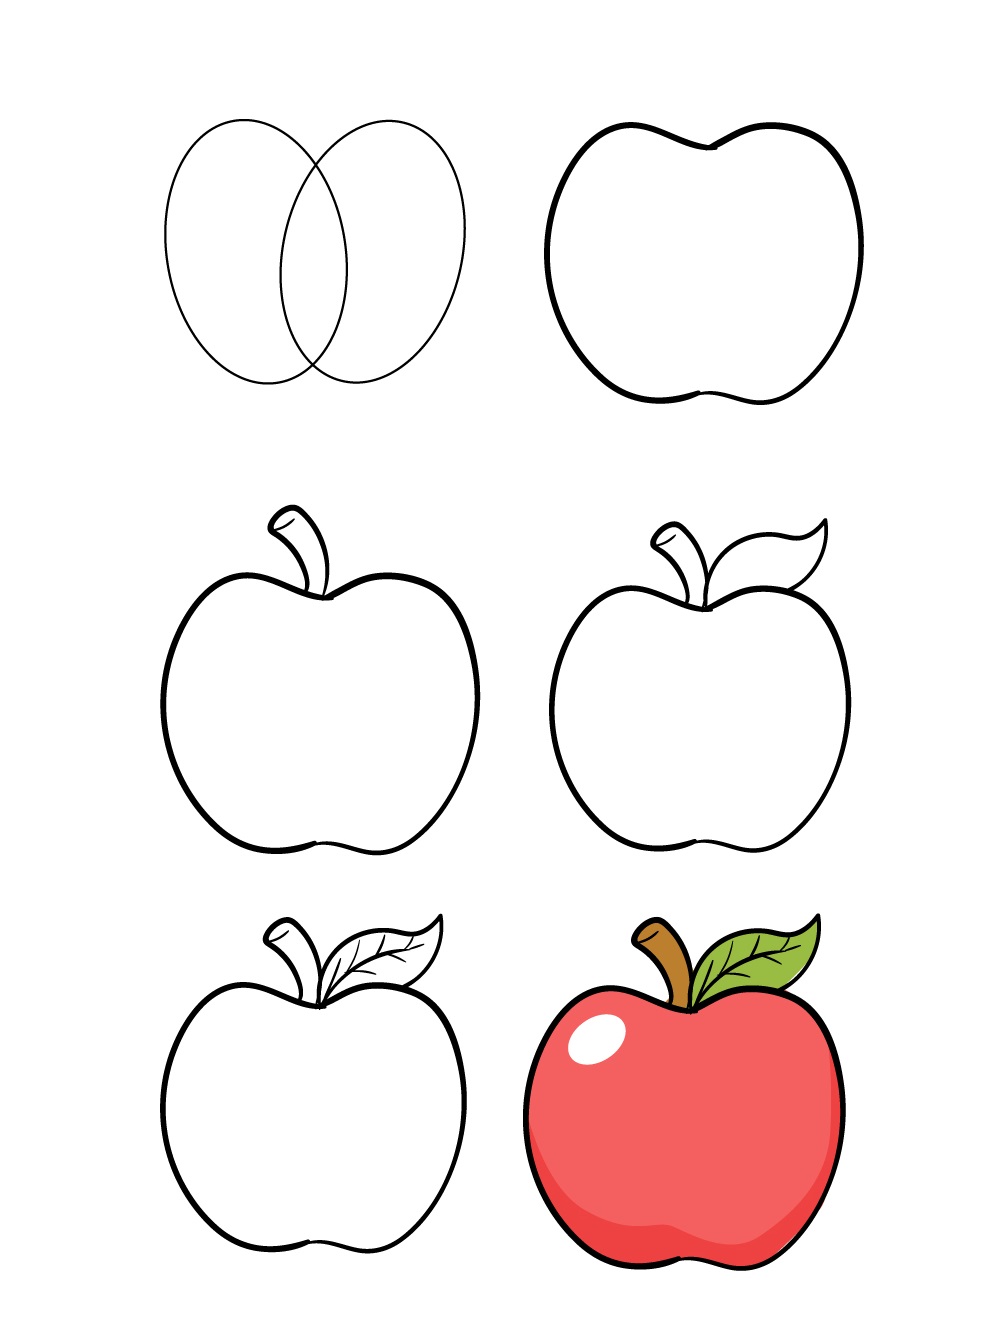 Thử thách với màu Sáp dầu  Vẽ quả táo  Painting Apple  Hướng dẫn vẽ quả  táo bằng màu sáp dầu  YouTube